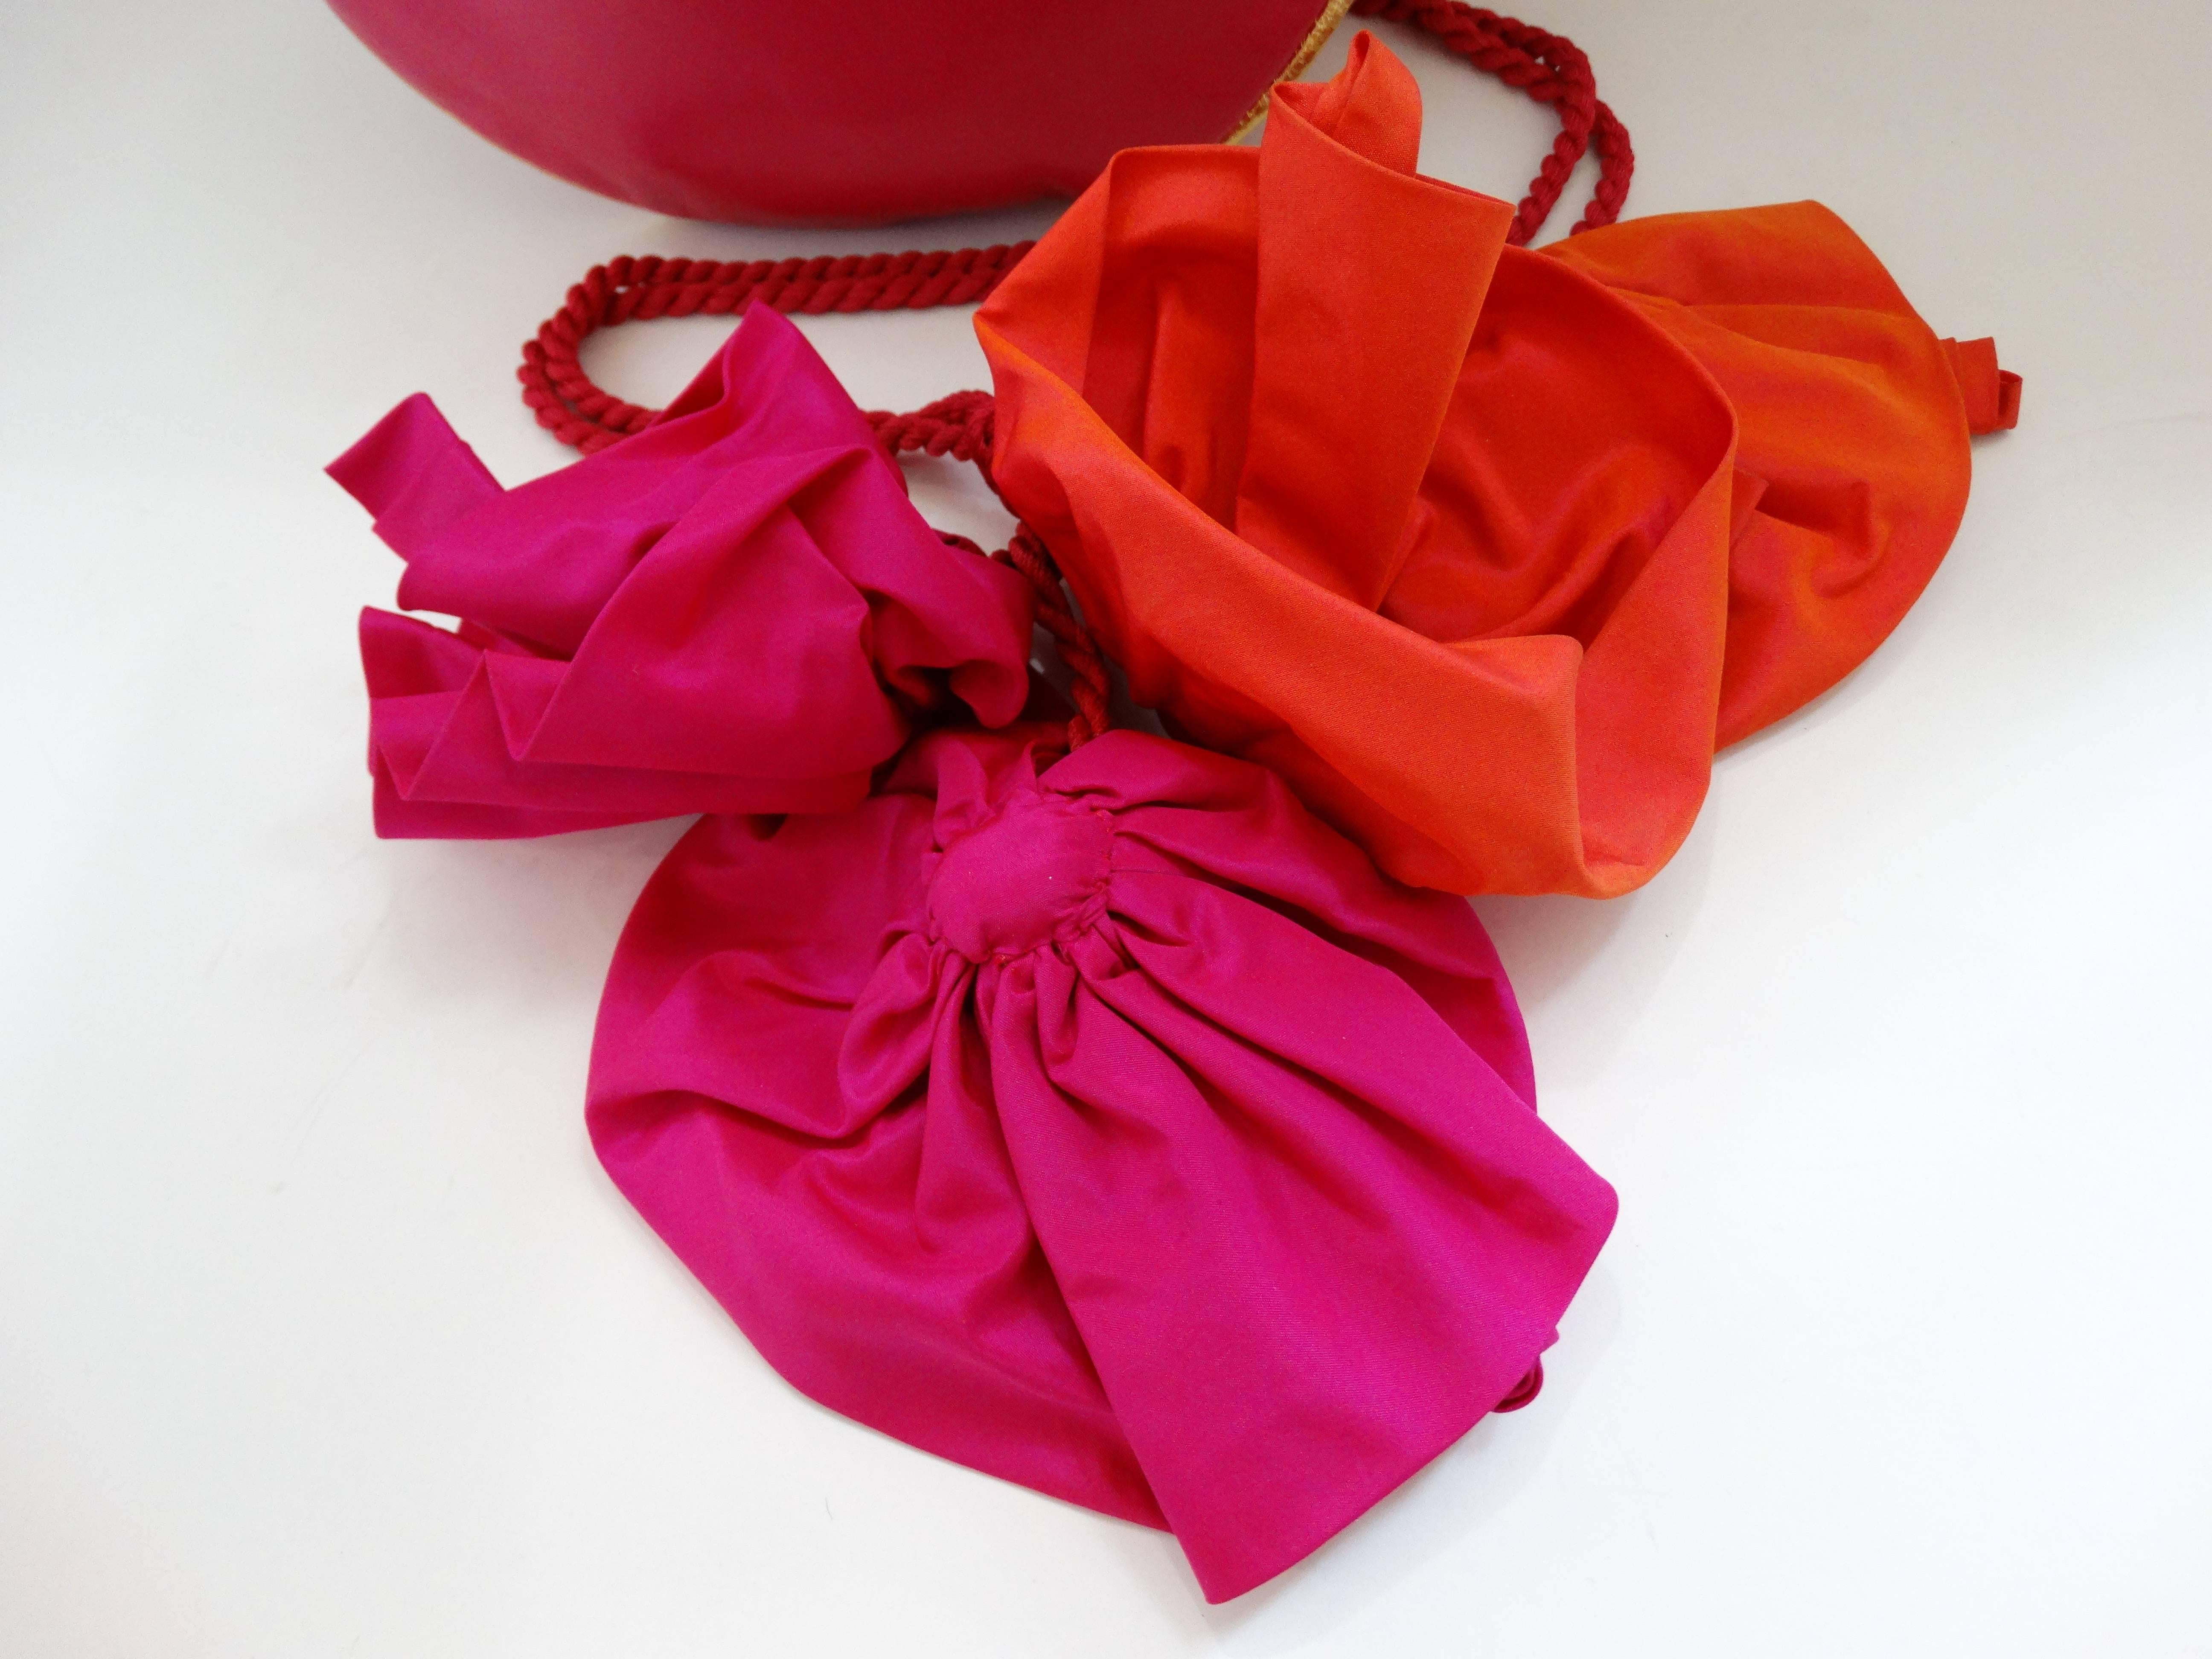 Women's 1990s Dominique Aurientis Pink Leather Charm Bag